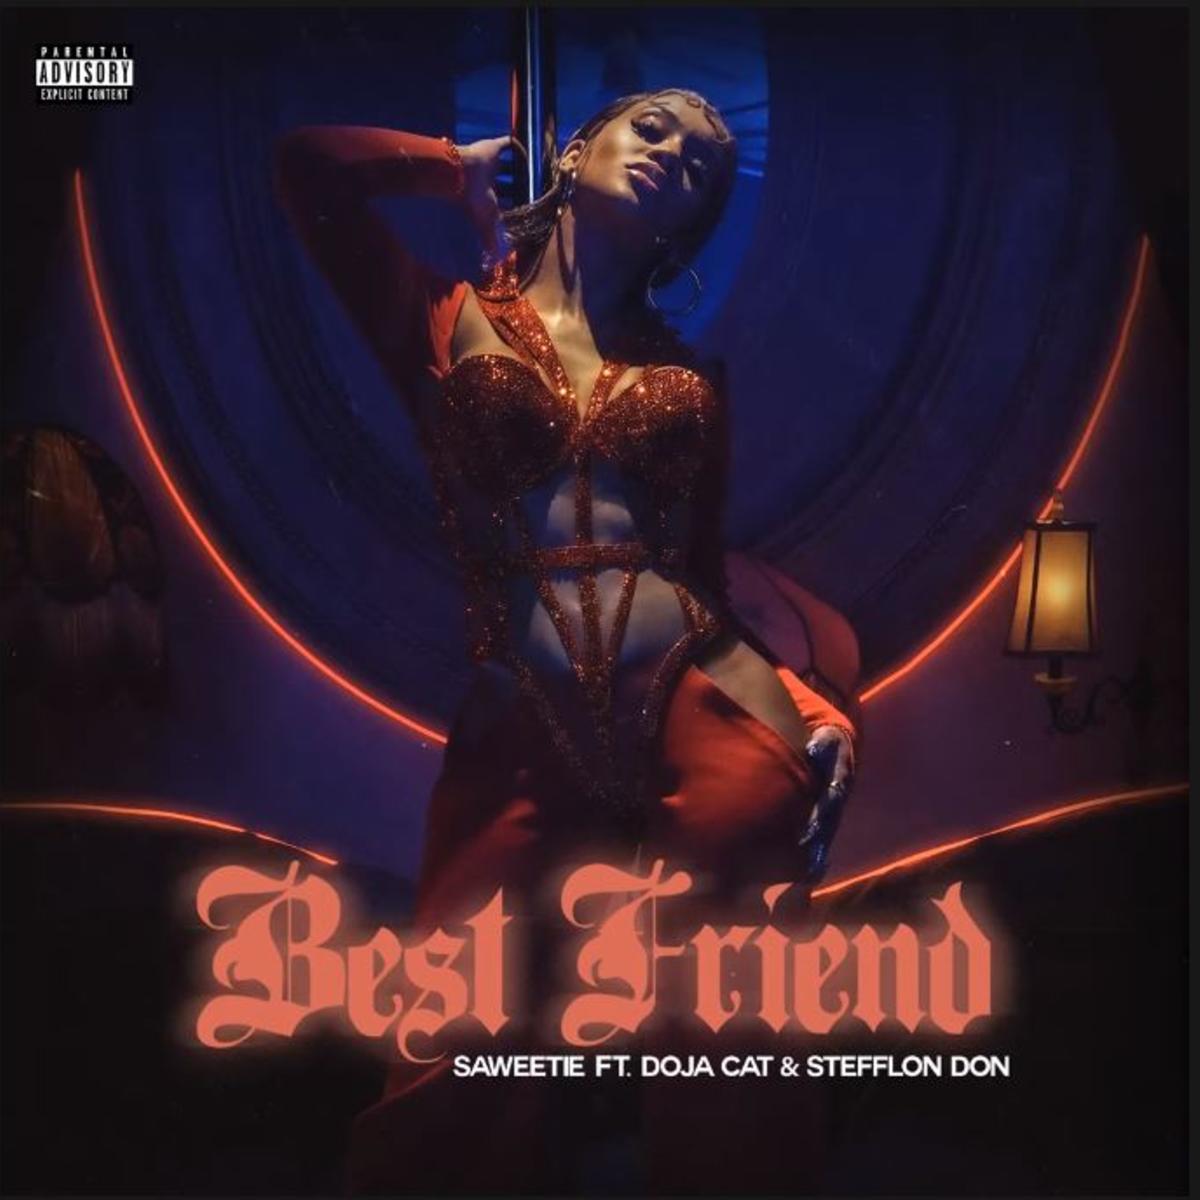 Saweetie - Best Friend (Remix) Ft. Doja Cat & Stefflon Don